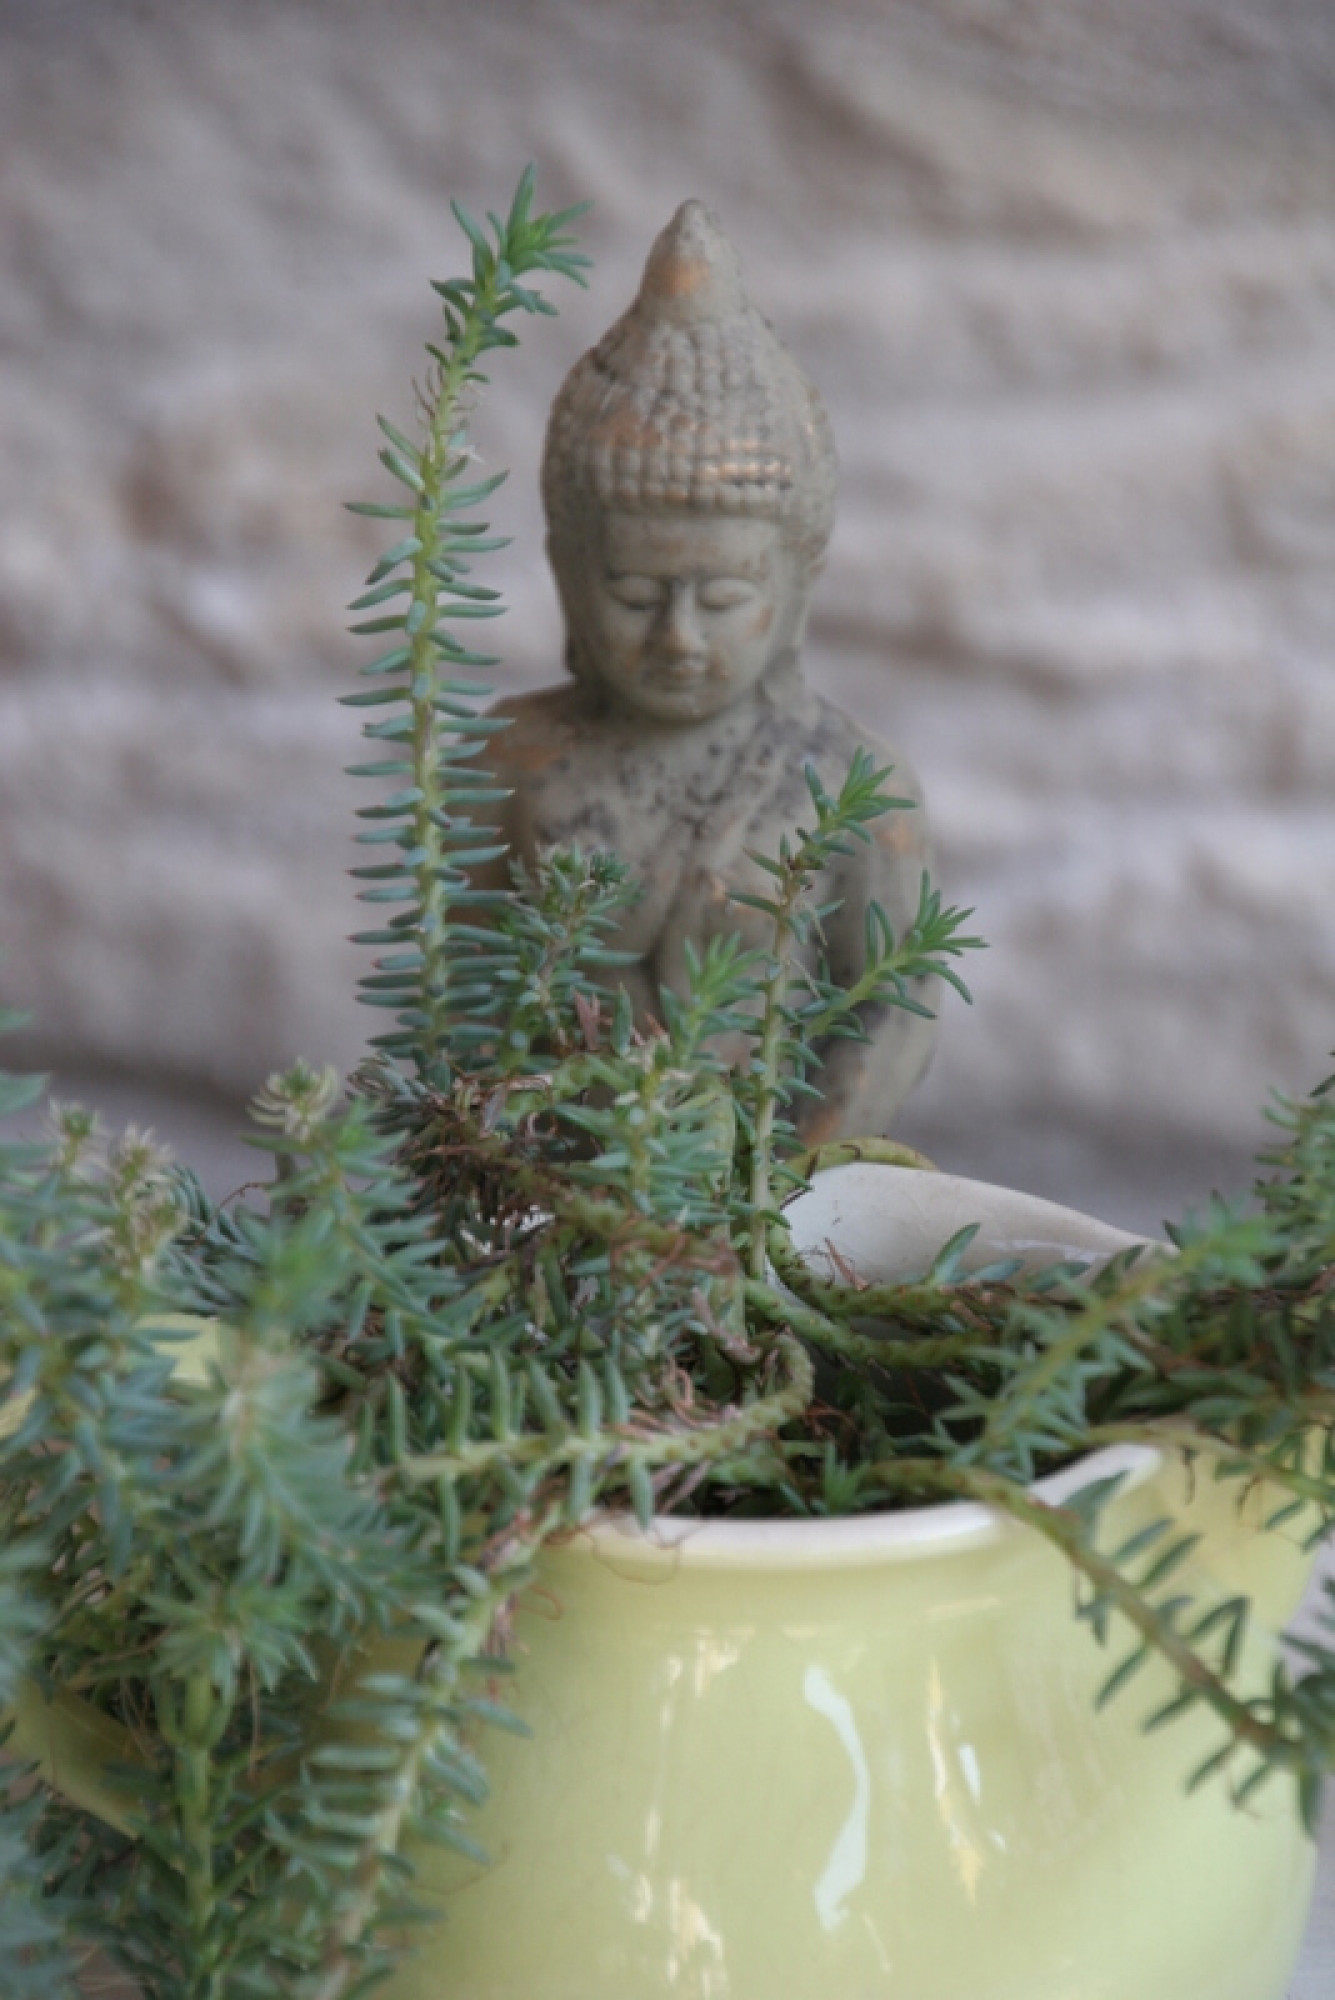 Buddha Keramik